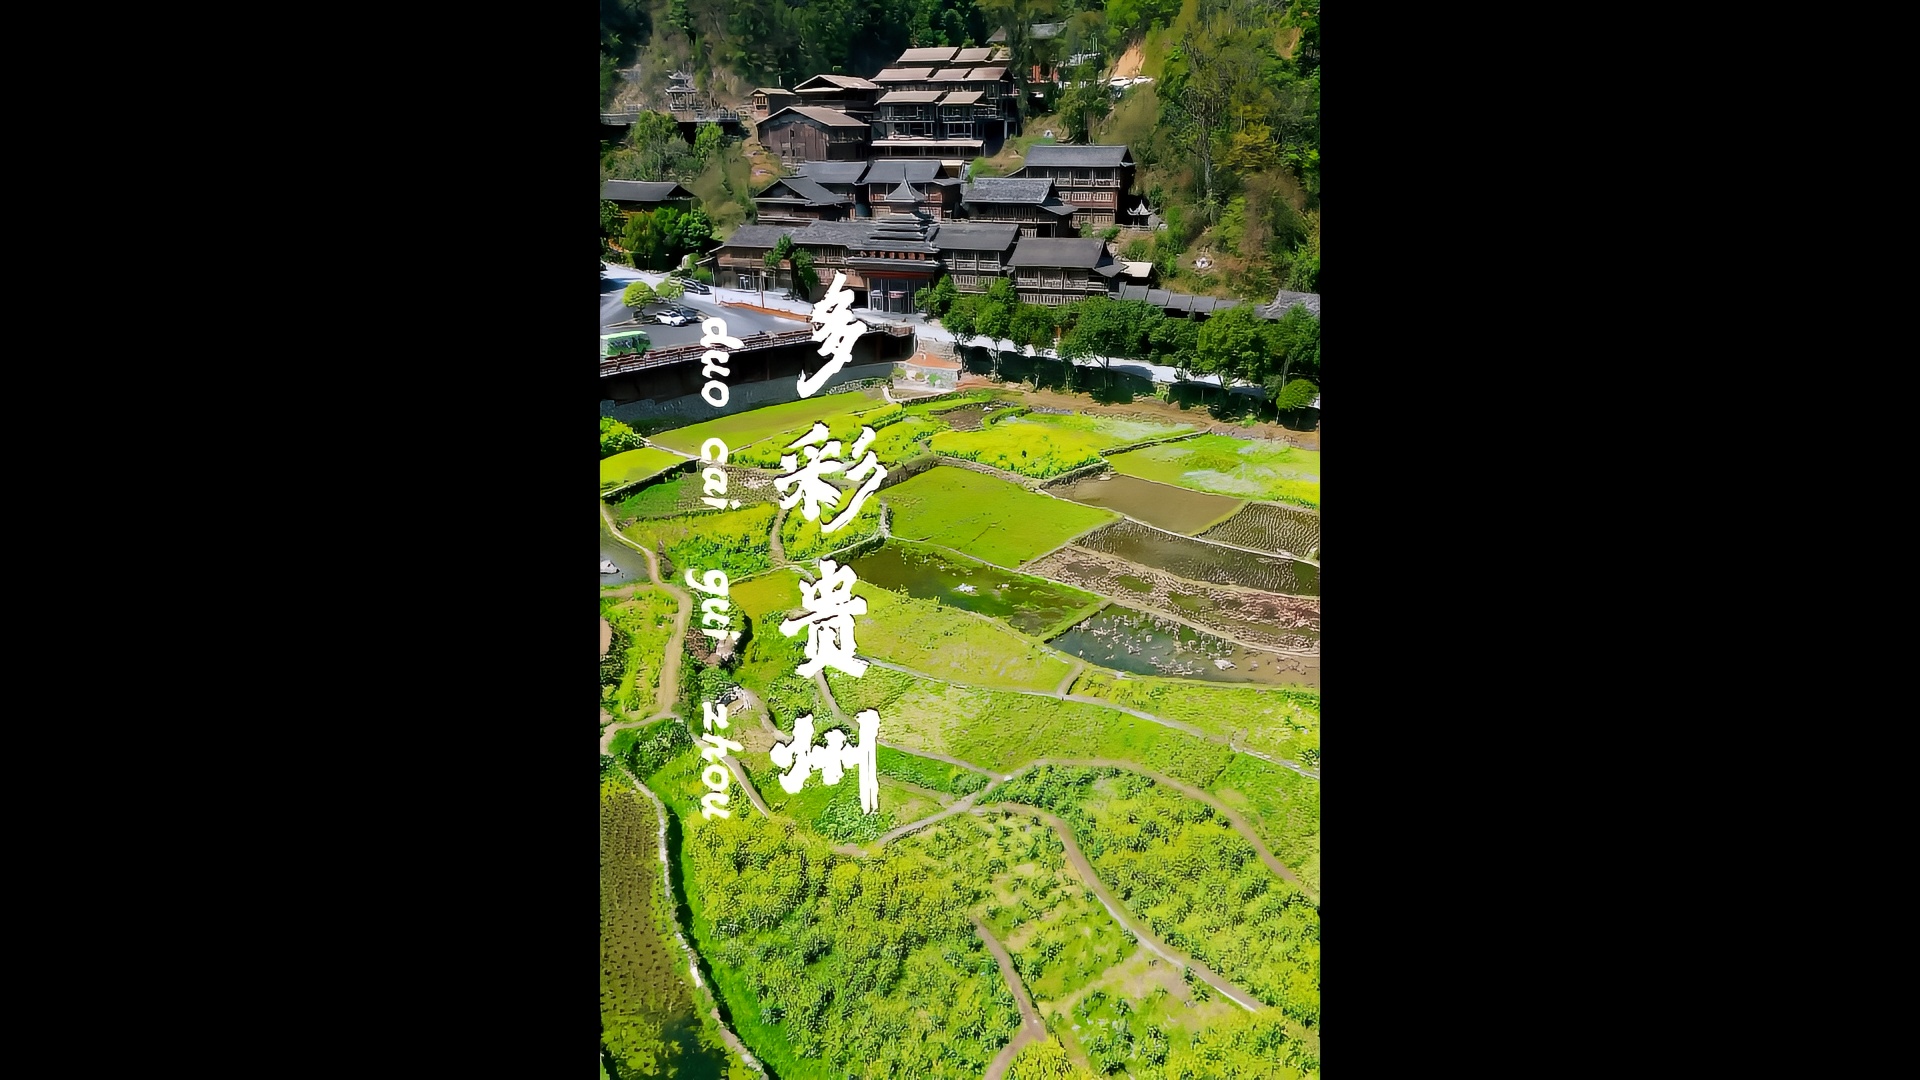 和我一起来贵州，感受多彩民族生活 #来贵州上春山 #在贵州体验民族生活 #携程私家团